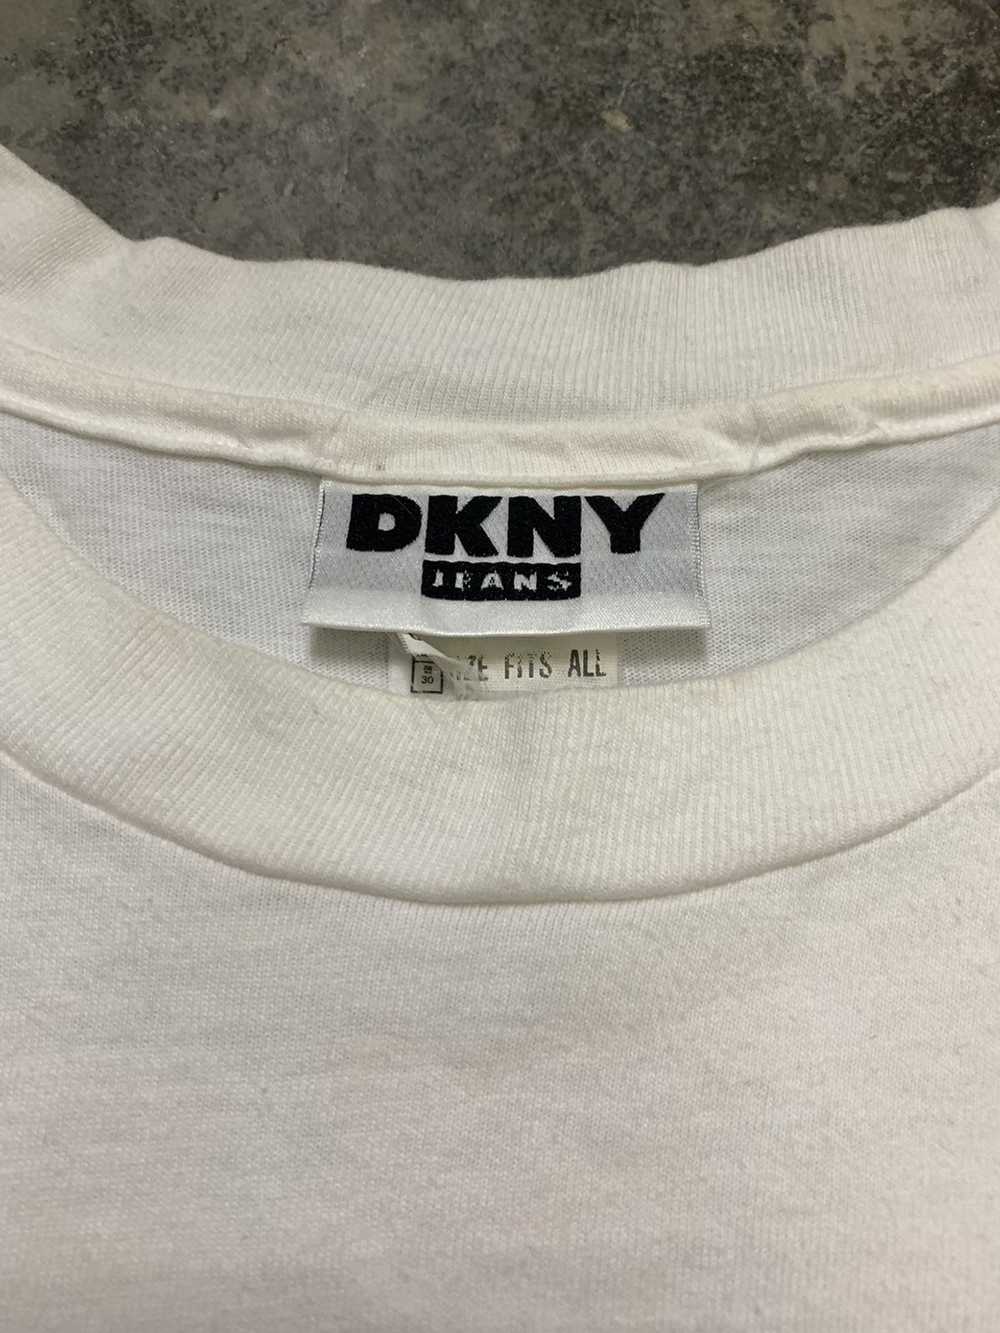 DKNY × Designer × Vintage Vintage DKNY Shirt Sing… - image 6